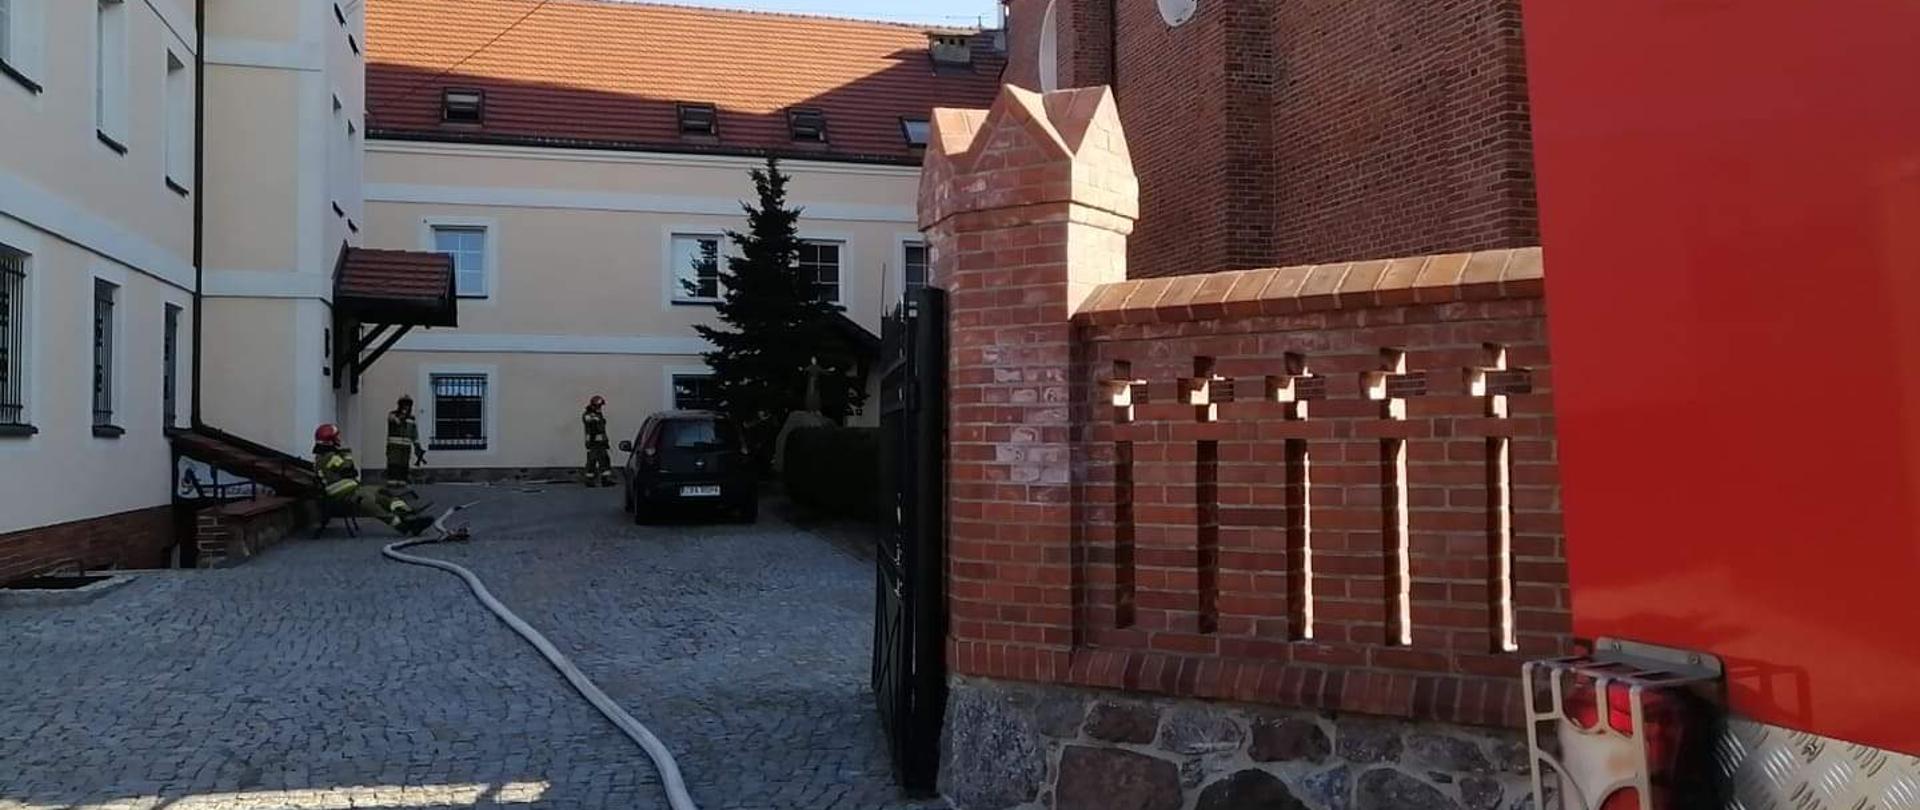 Zdjęcie przedstawia dziedziniec klasztoru Franciszkanów w Radziejowie oraz strażaków z rozciągniętą linią gaśniczą, podczas gaszenia pożaru.